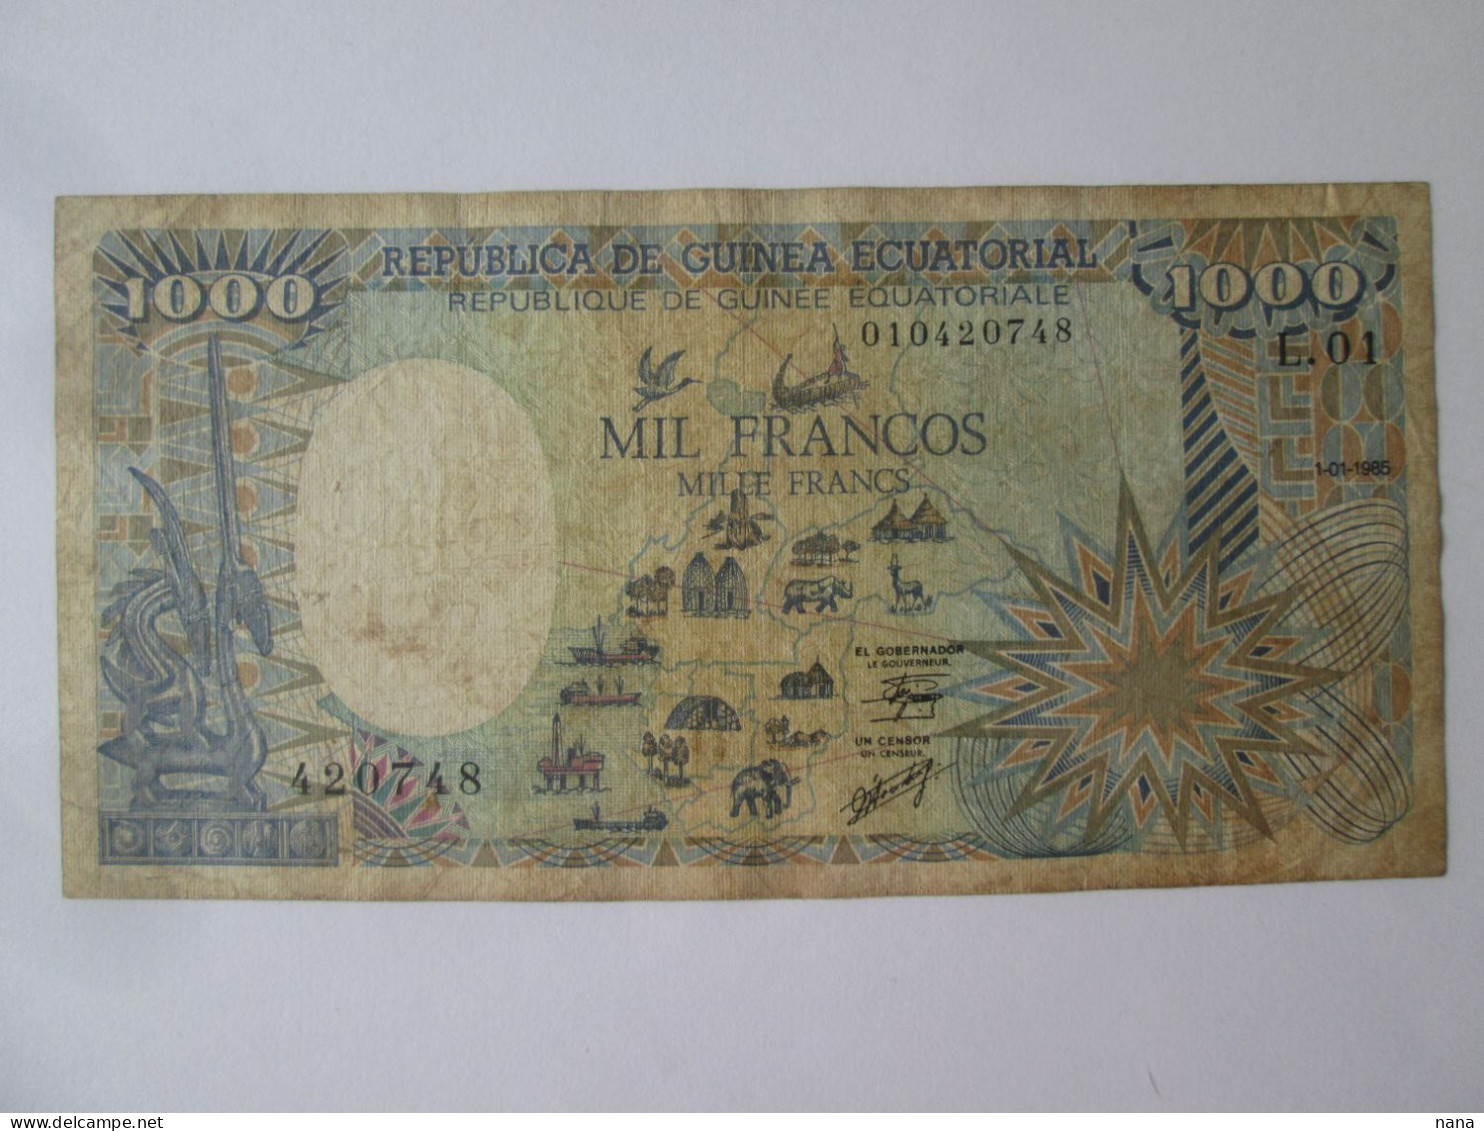 Rare! Equatorial Guinea 1000 Francs 1985 Banknote,see Pictures - Equatorial Guinea